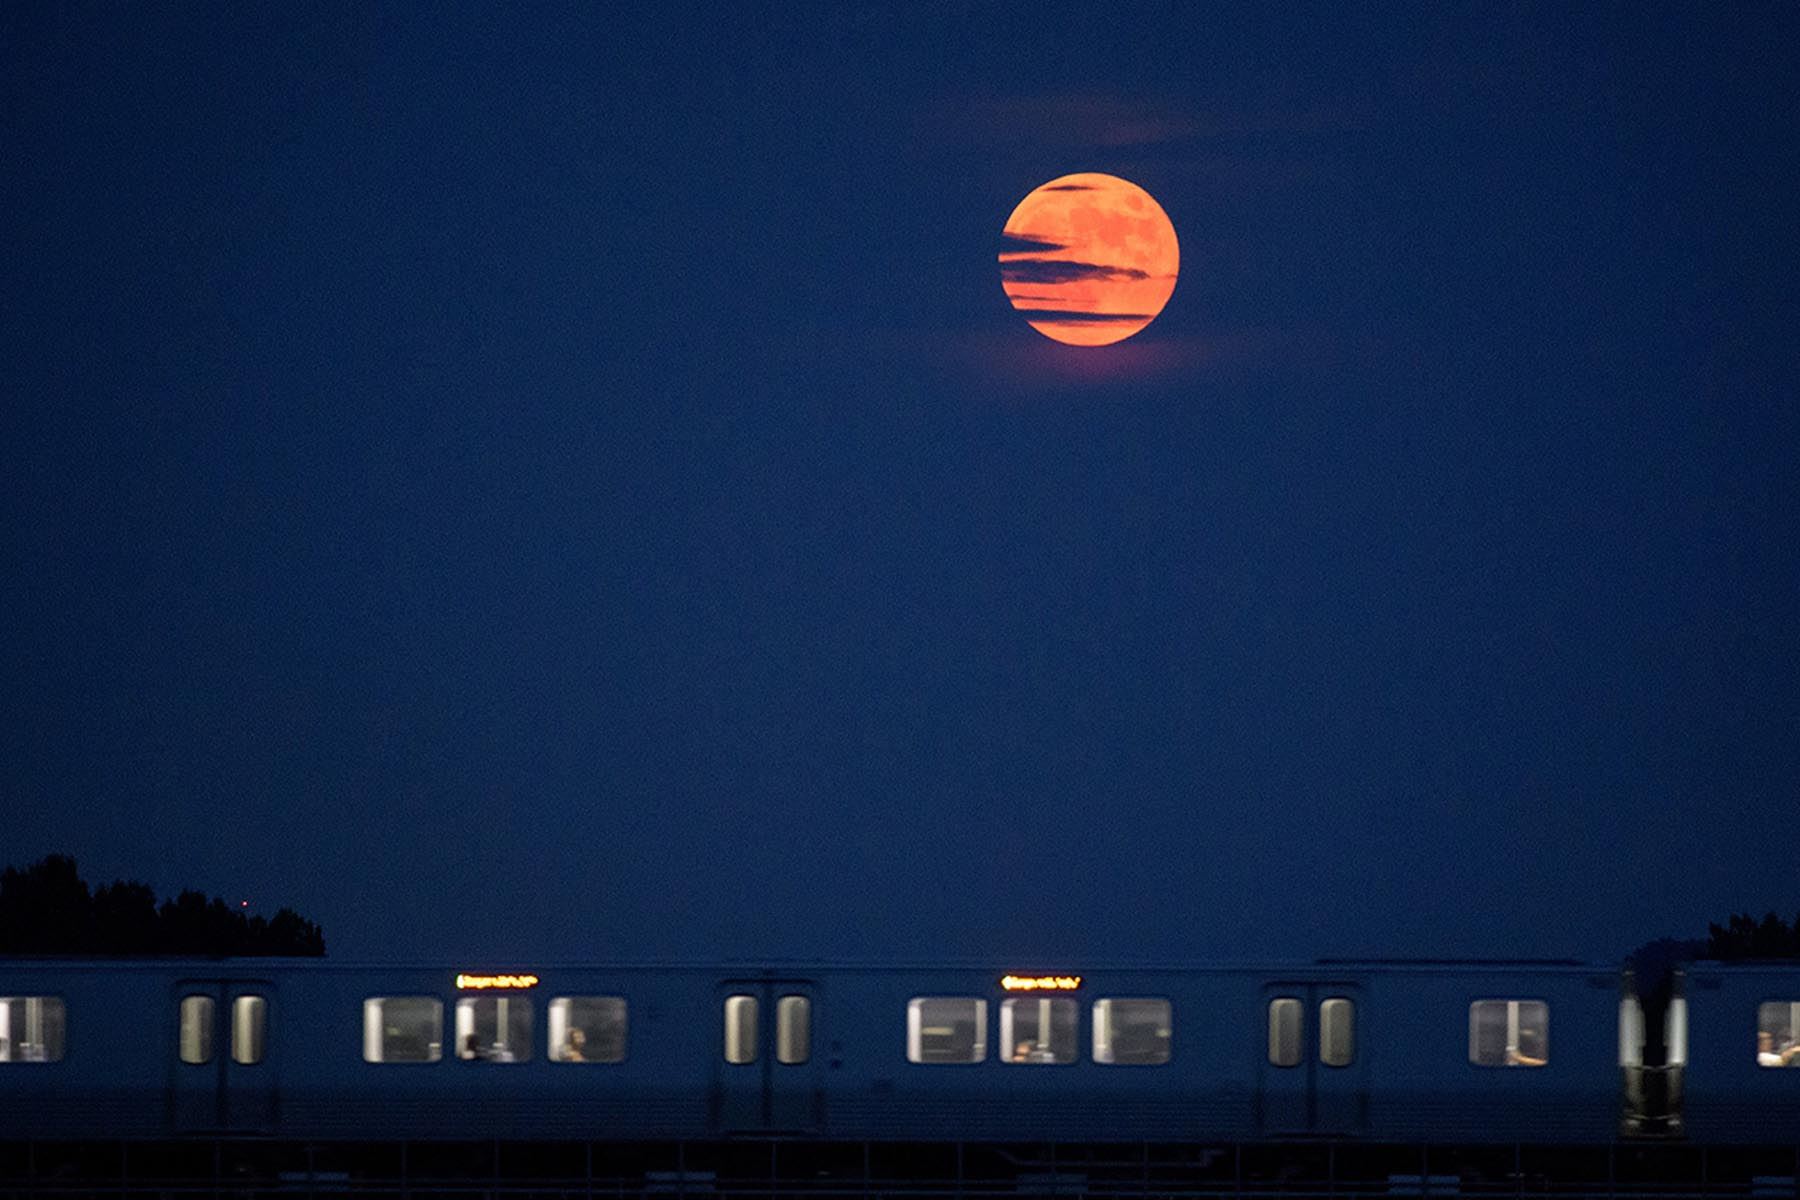 Superluna de fresa: ¿qué es y cómo podrás ver la luna llena este 14 de junio?